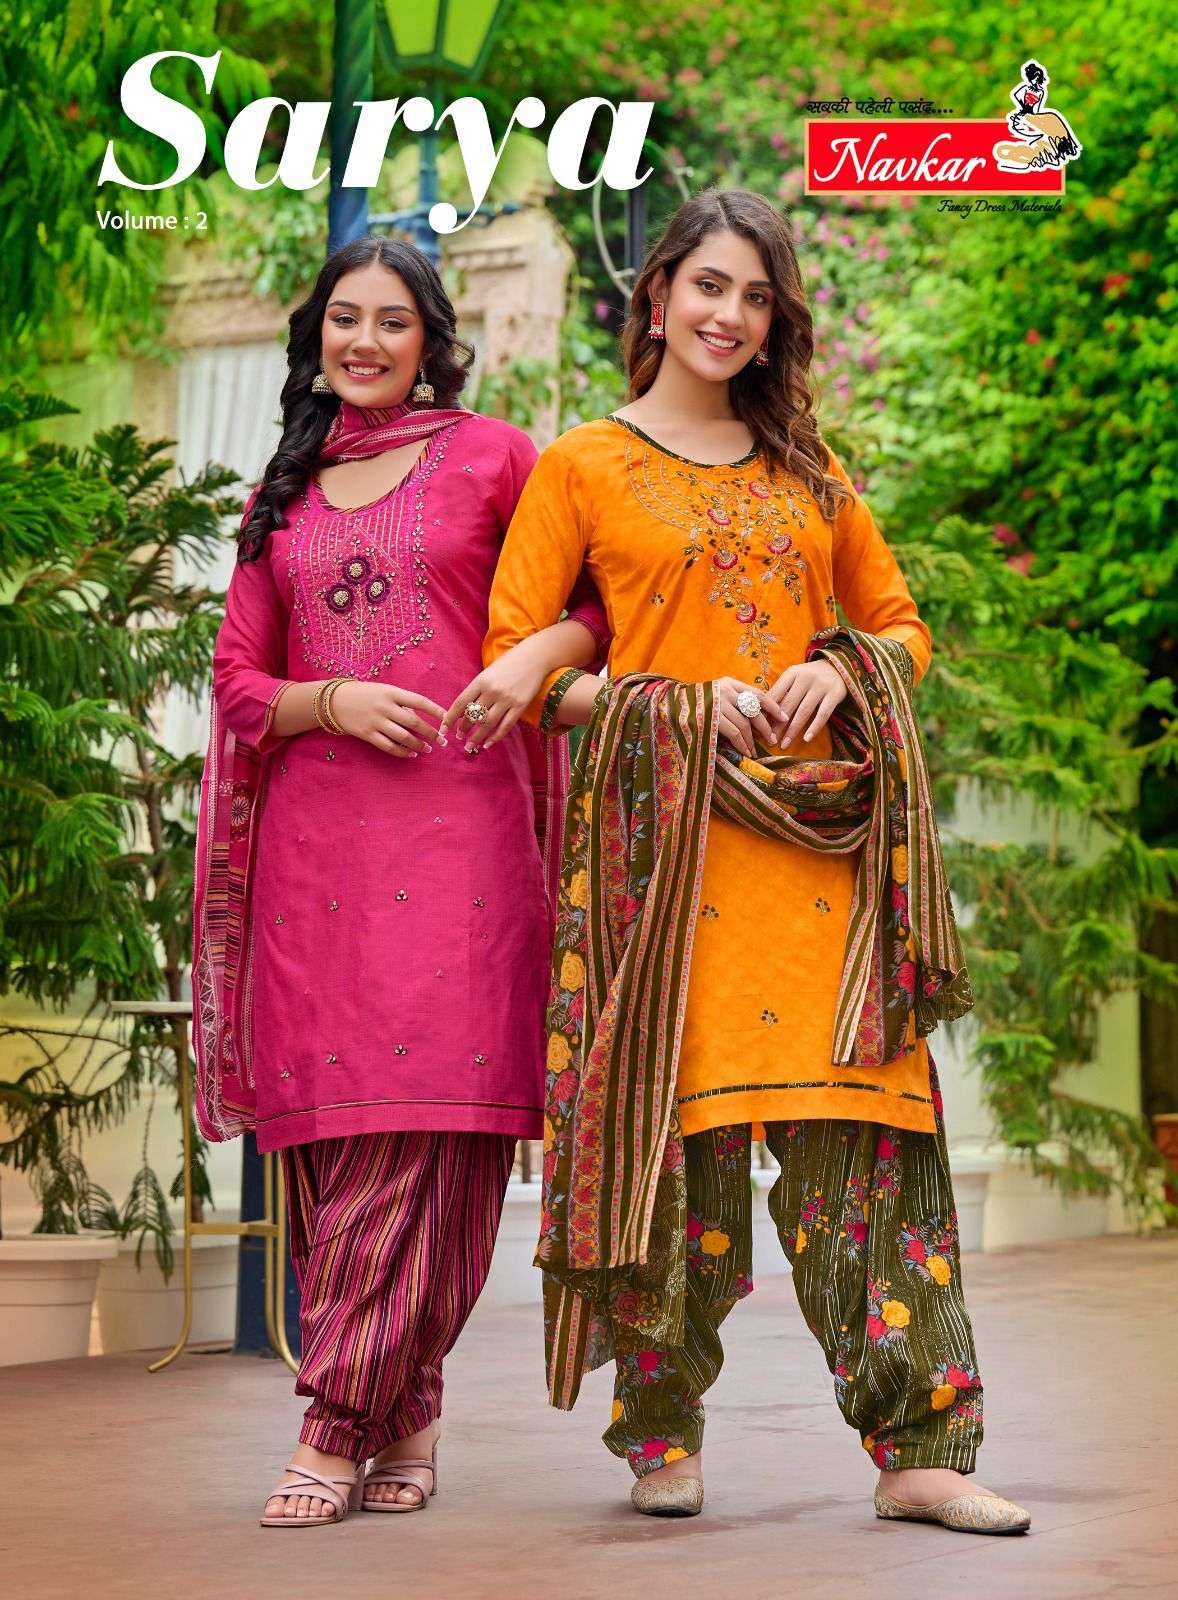 Indian Ethnic Wear Online Store | Patiyala dress, Patiala dress, Dress